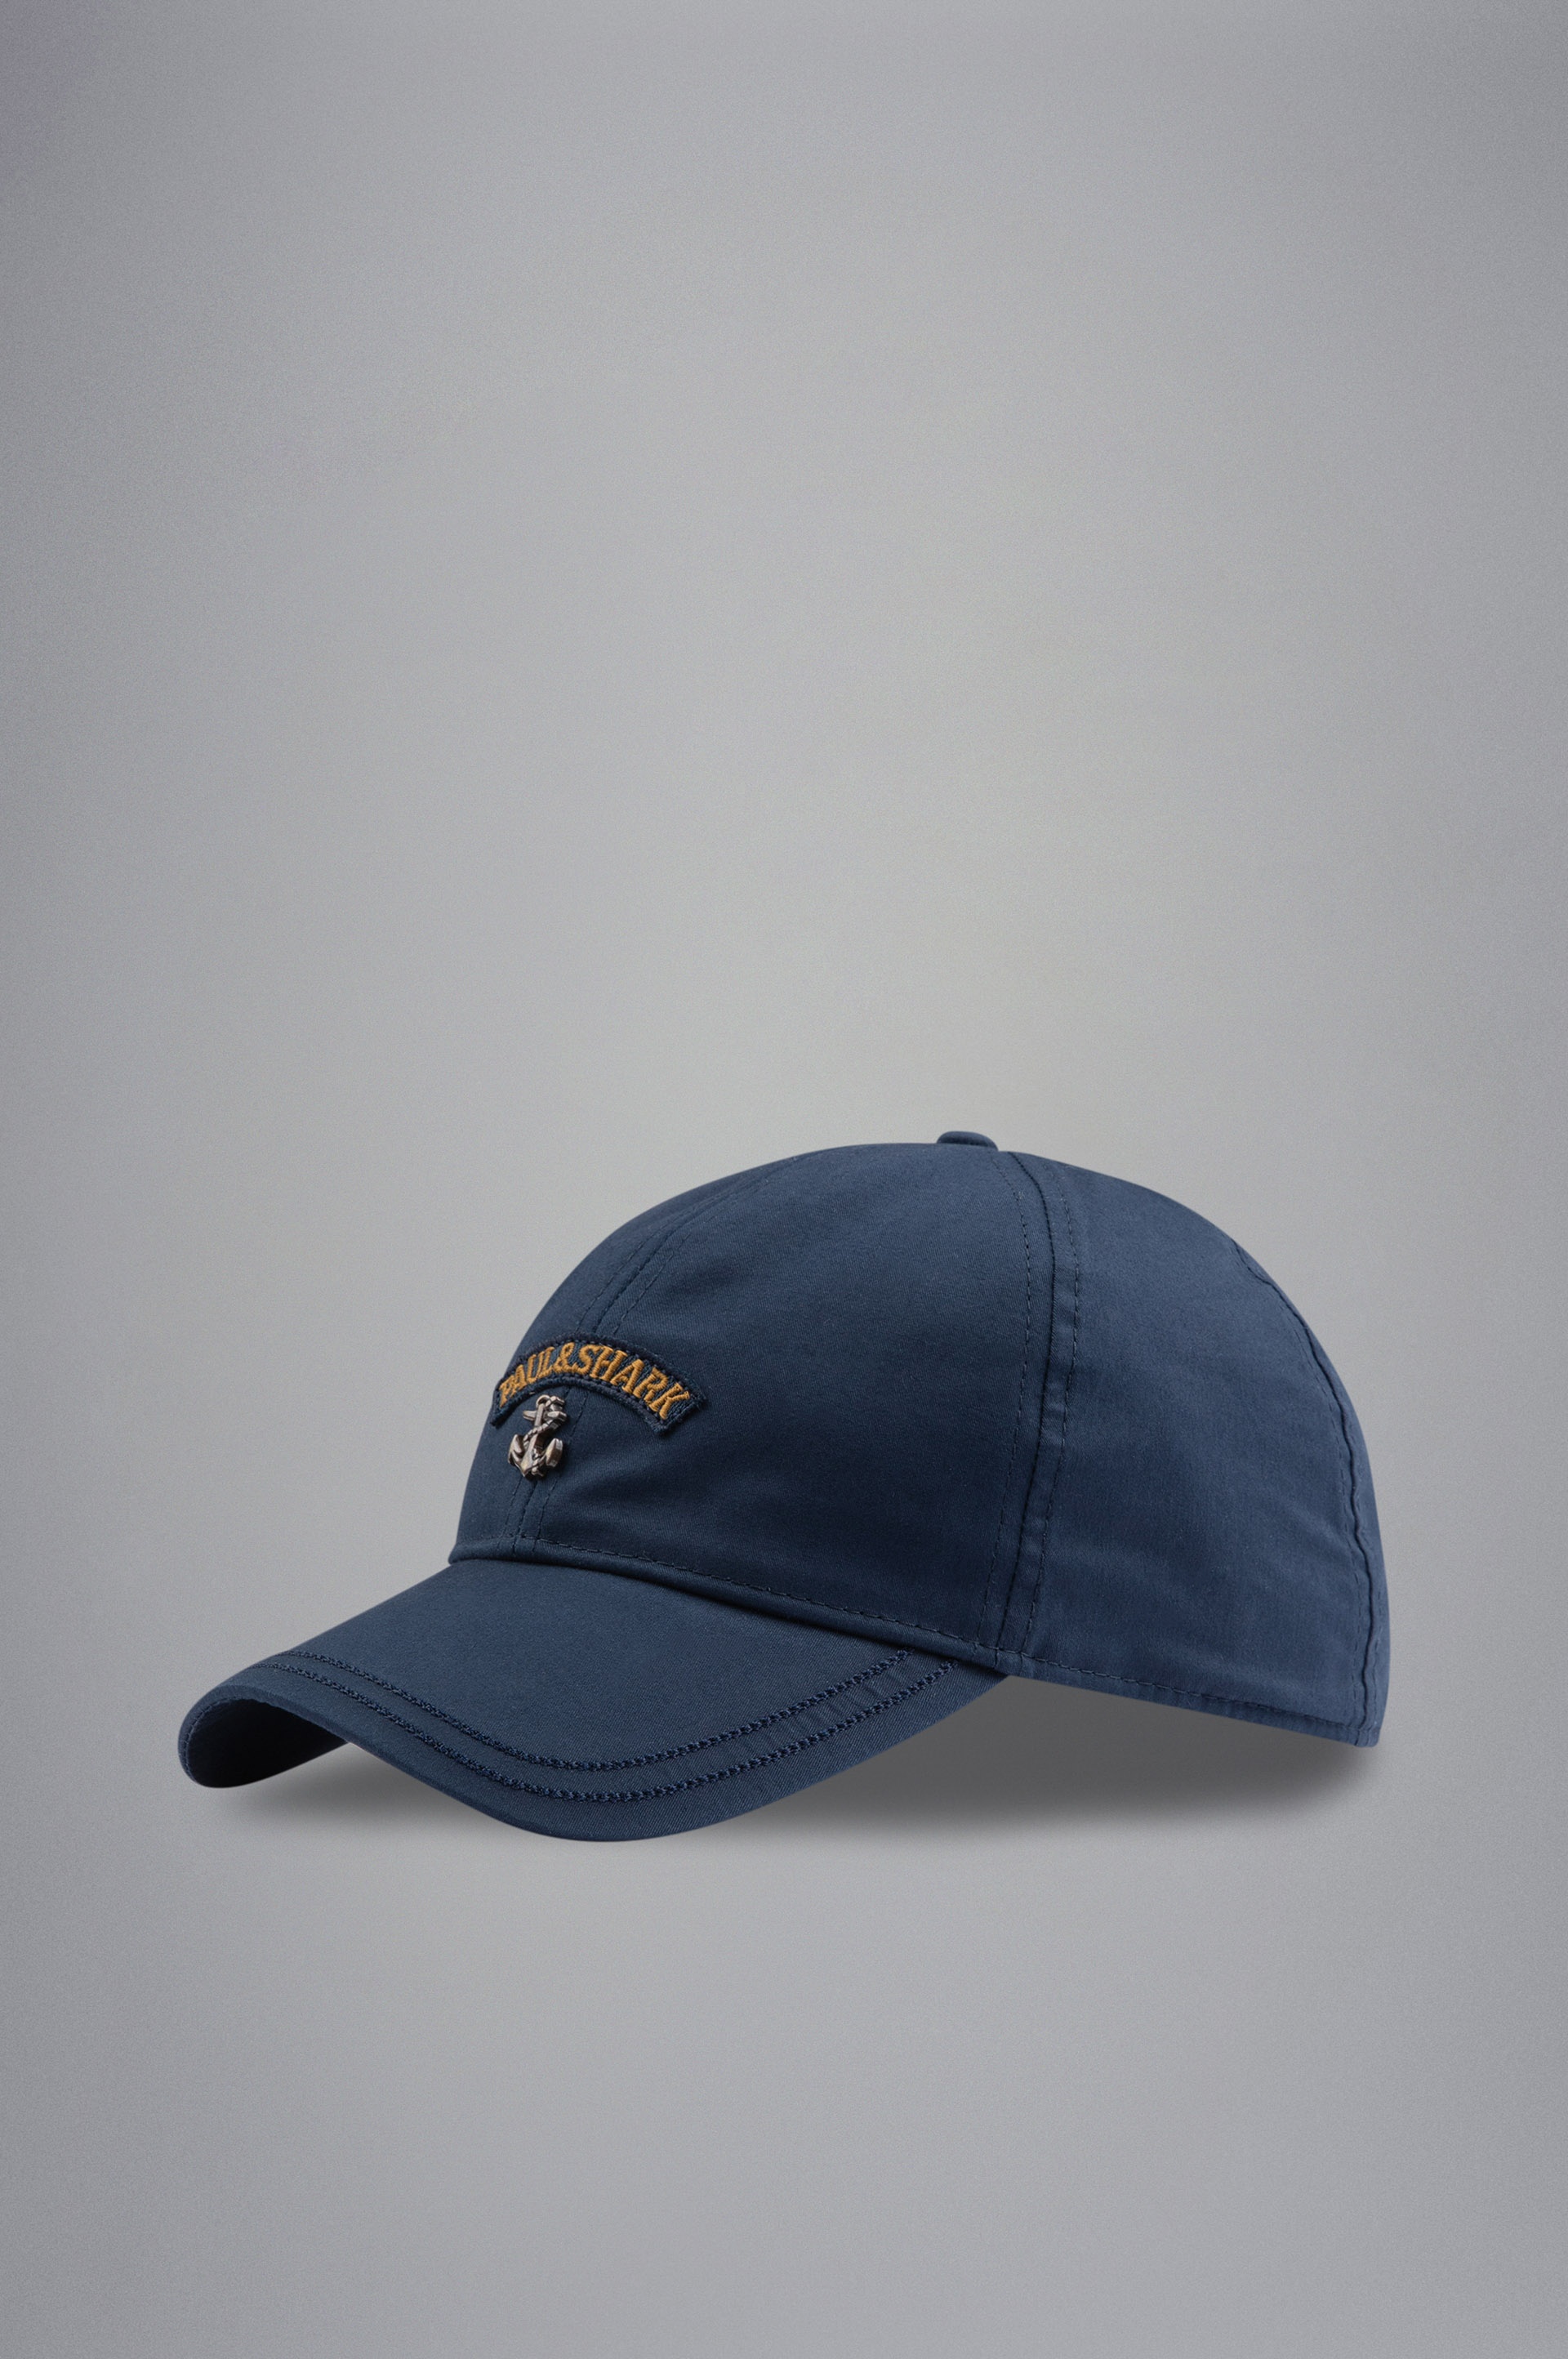 BASEBALL CAP - 1